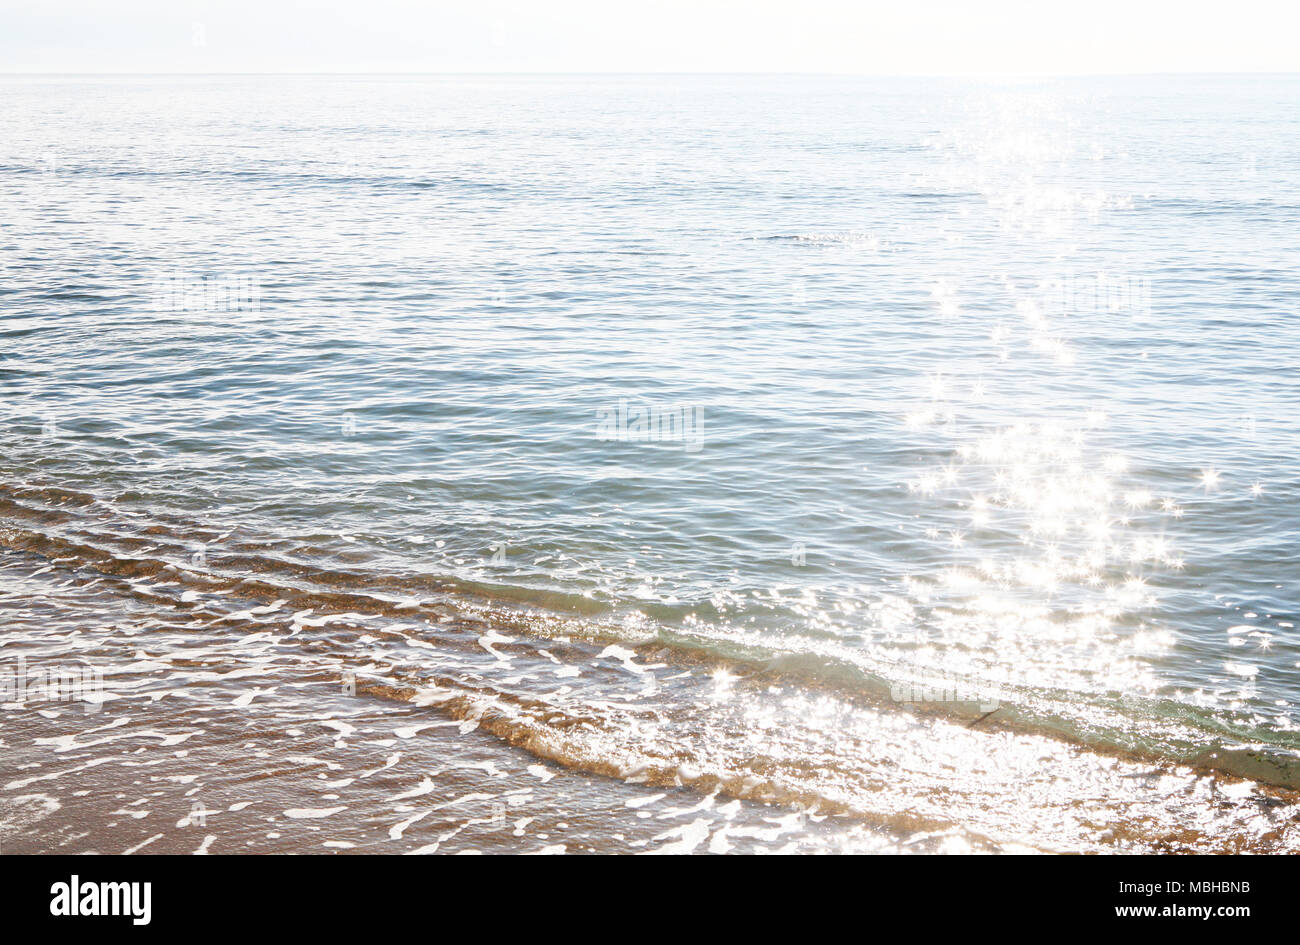 The reflex of sun on the sea shore Stock Photo